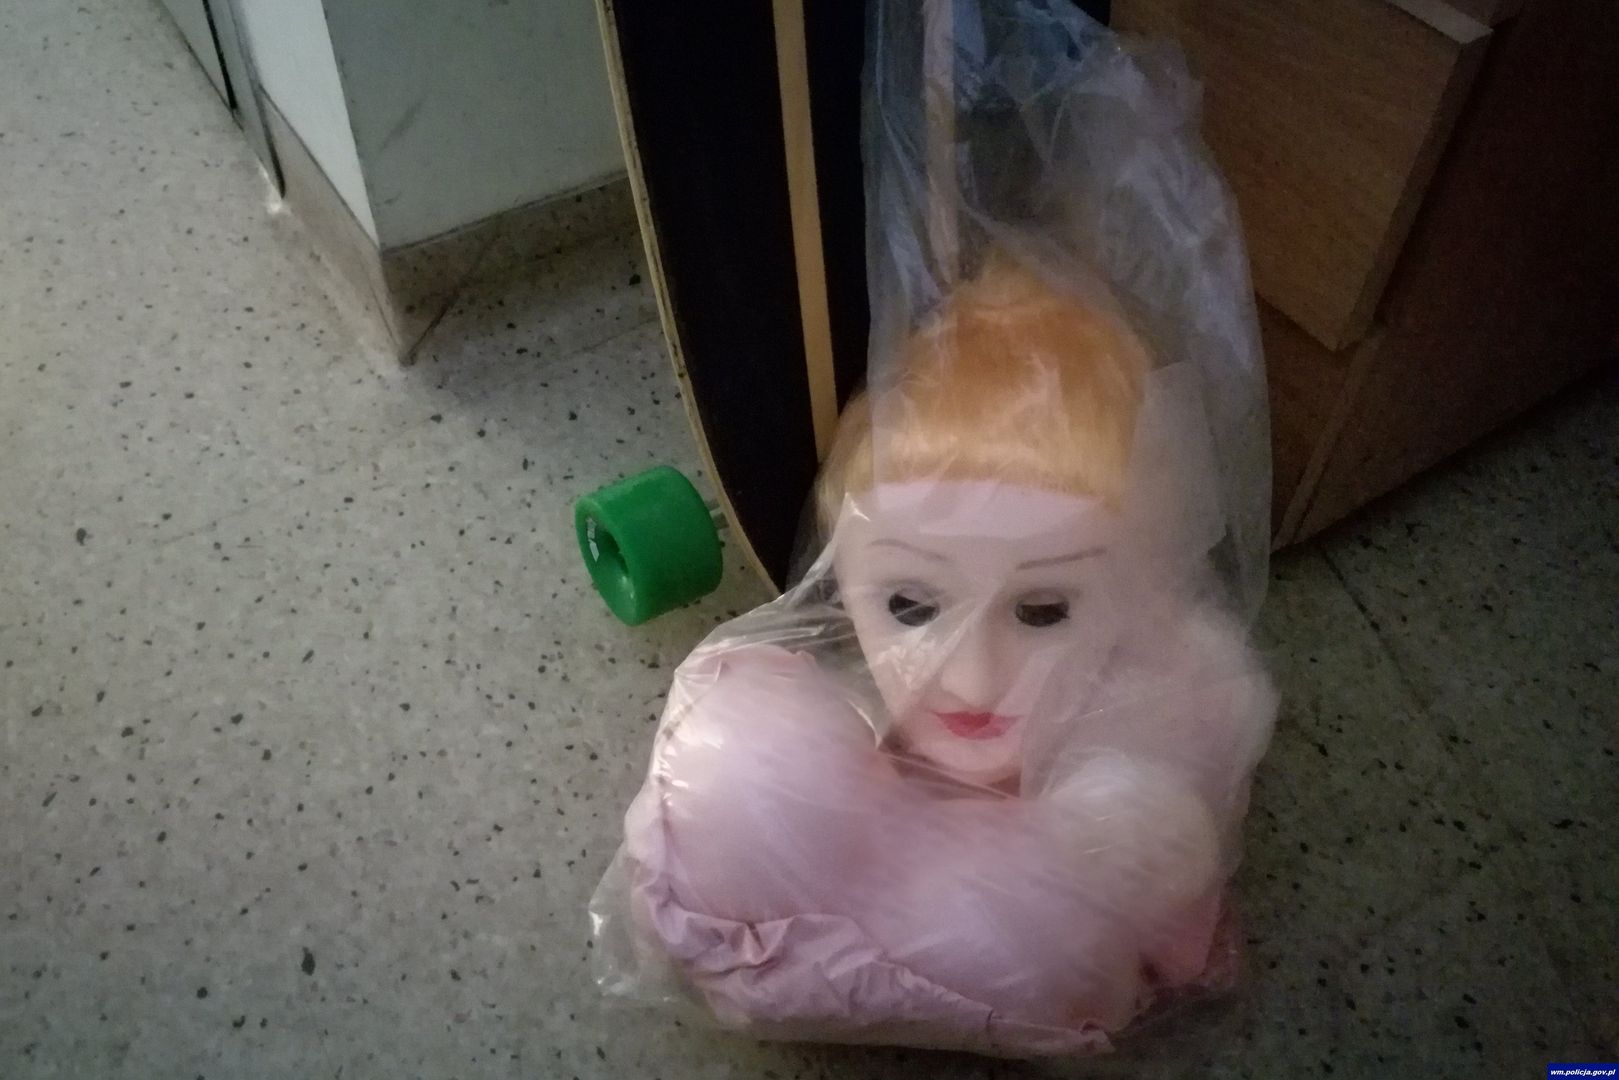 Policja odzyskała gumową lalkę. Złodzieje mogą trafić do więzienia na lata